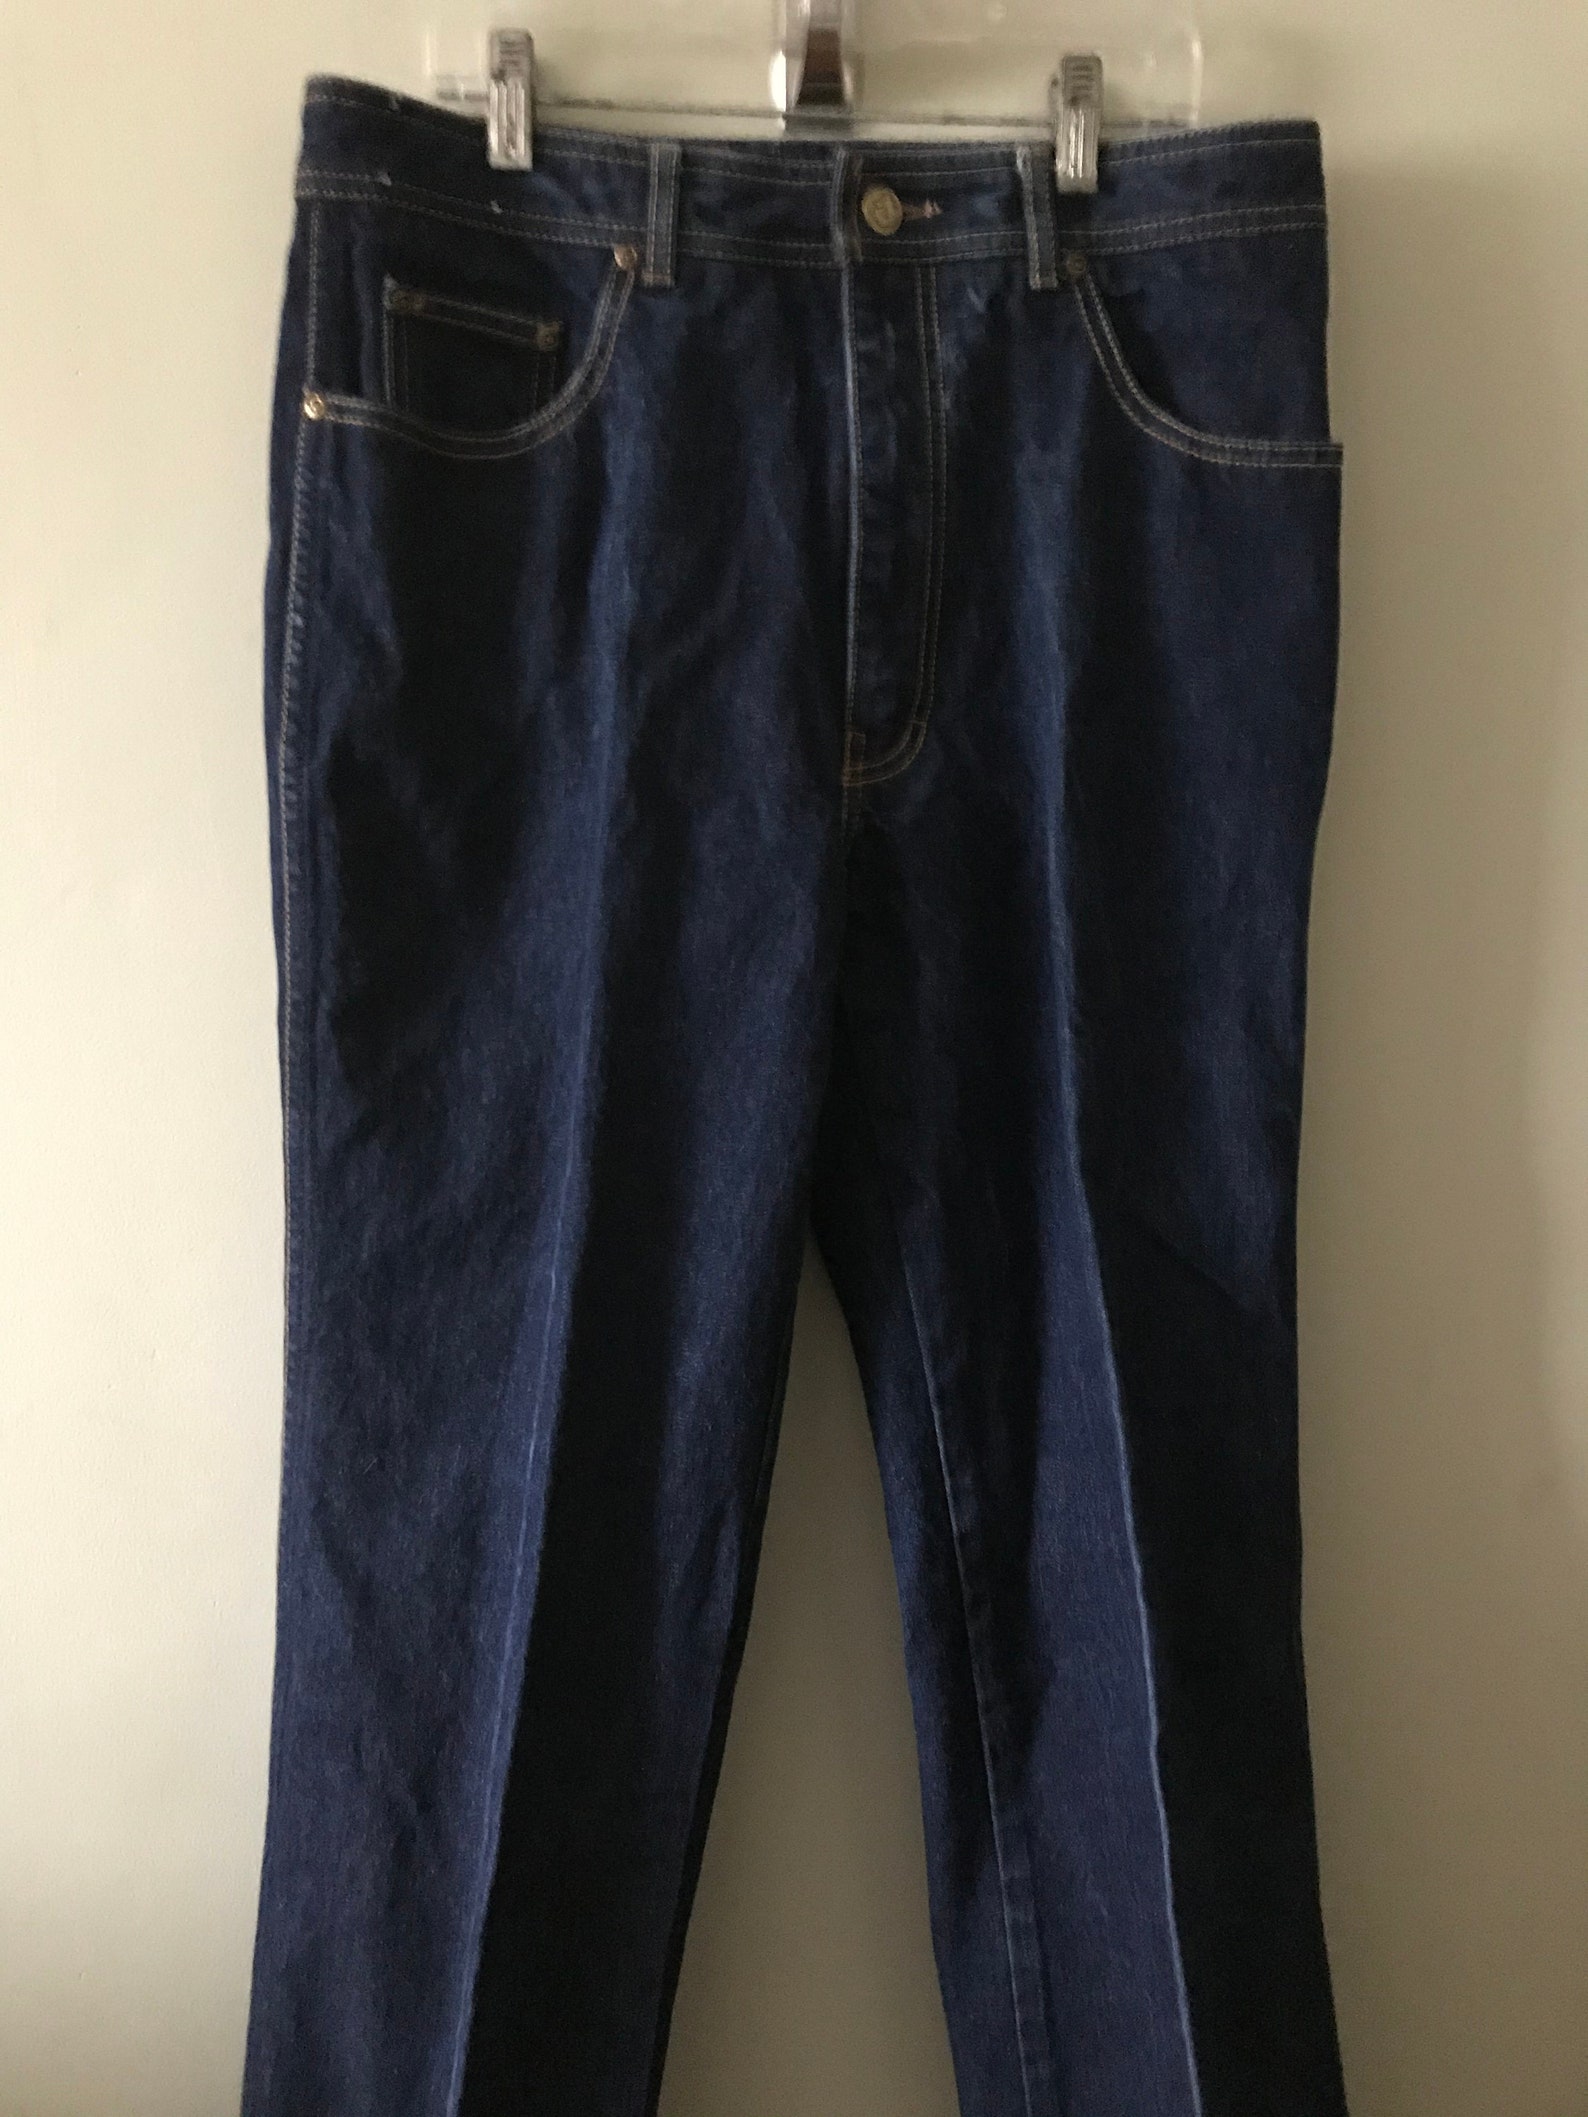 Vintage Jordache Jeans / 1980's Jordache Dungarees/ Size | Etsy